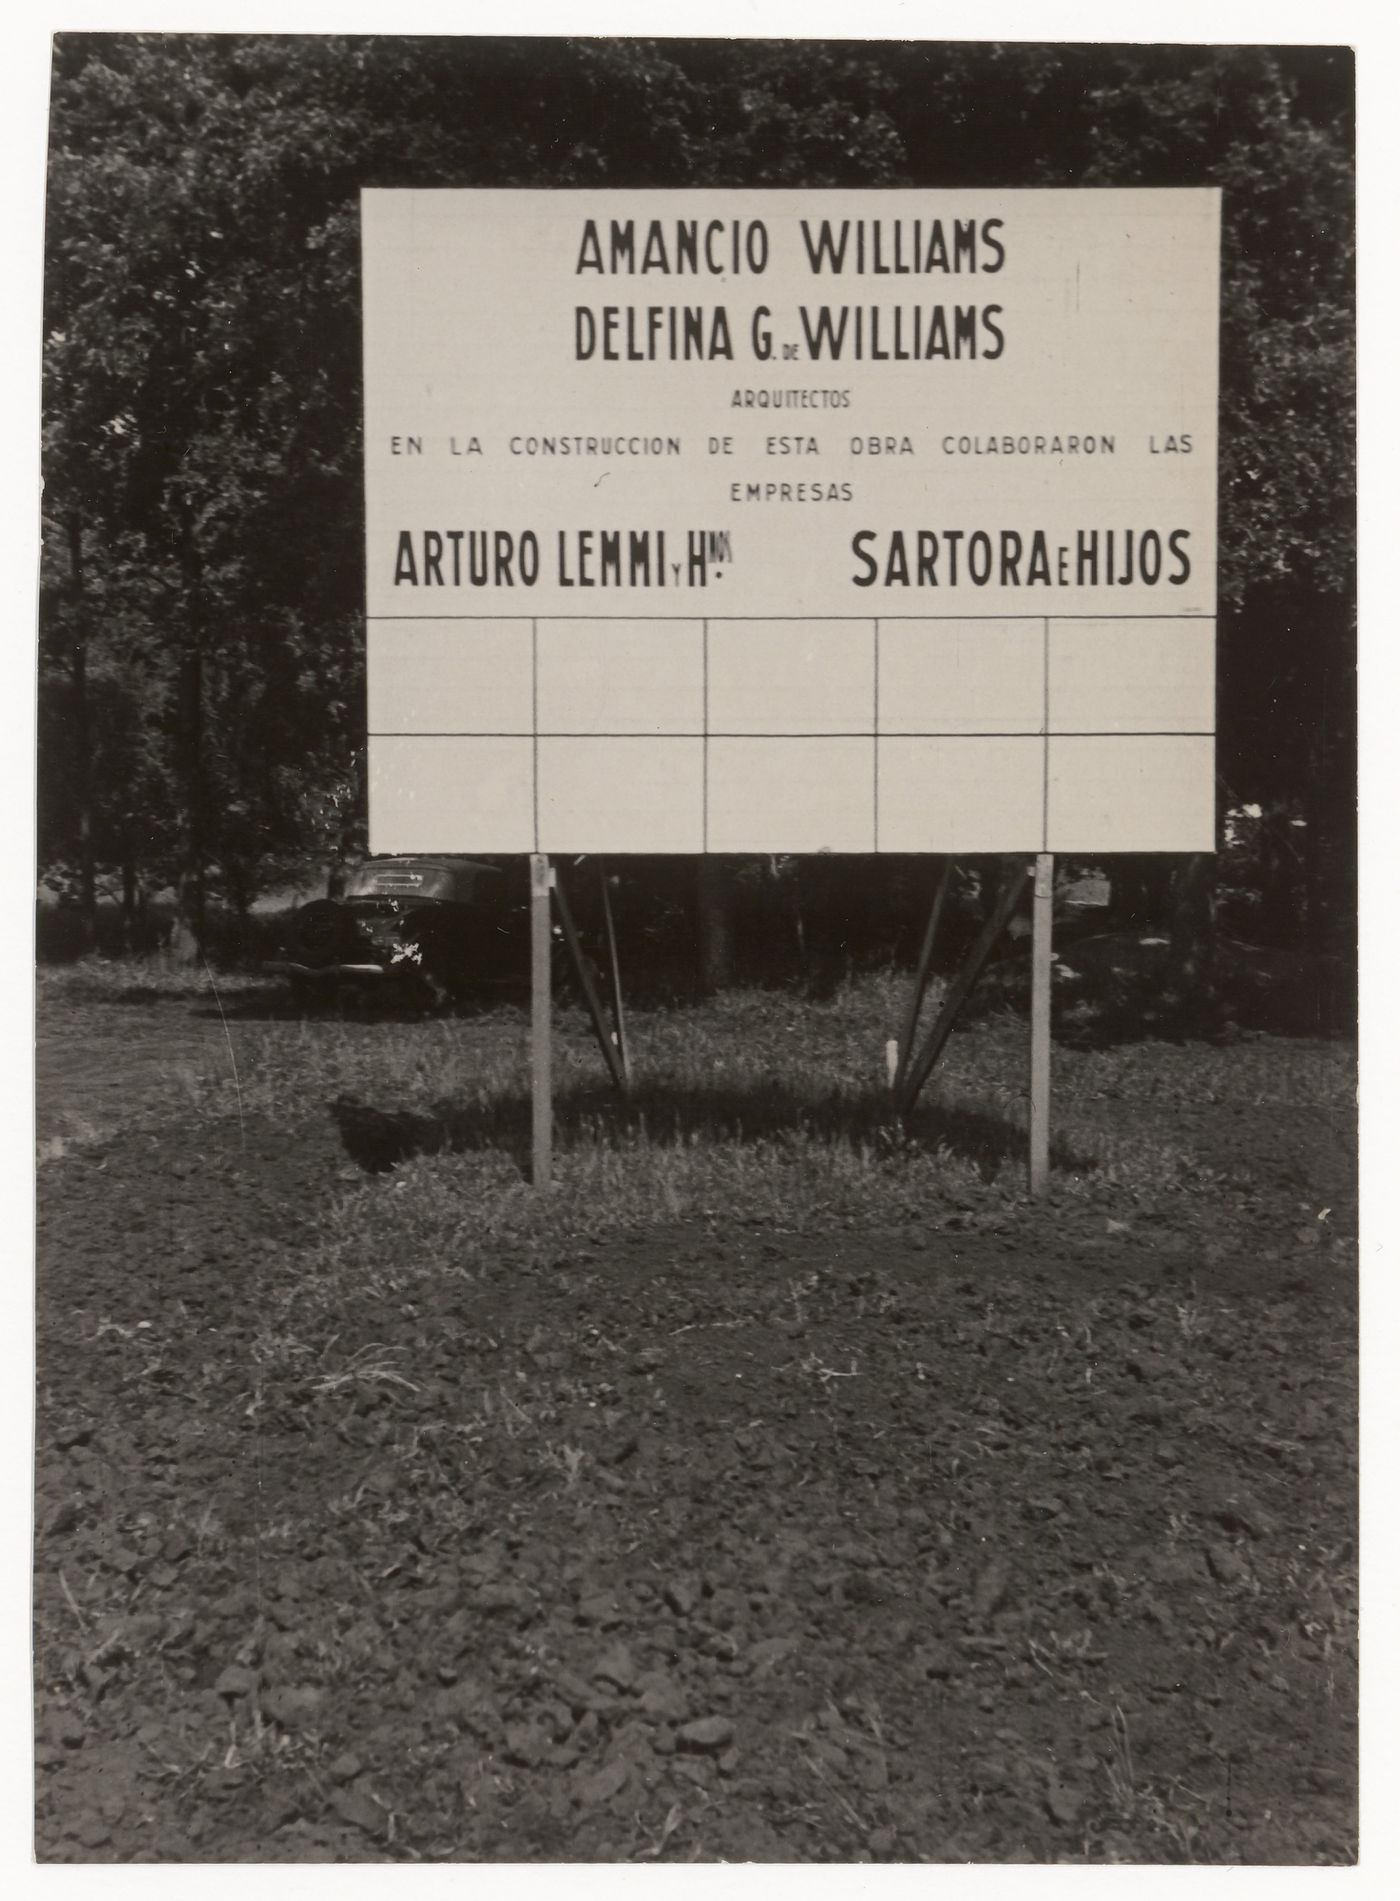 Photograph panel advertising the design and construction team for Casa sobre el arroyo, Mar del Plata, Argentina